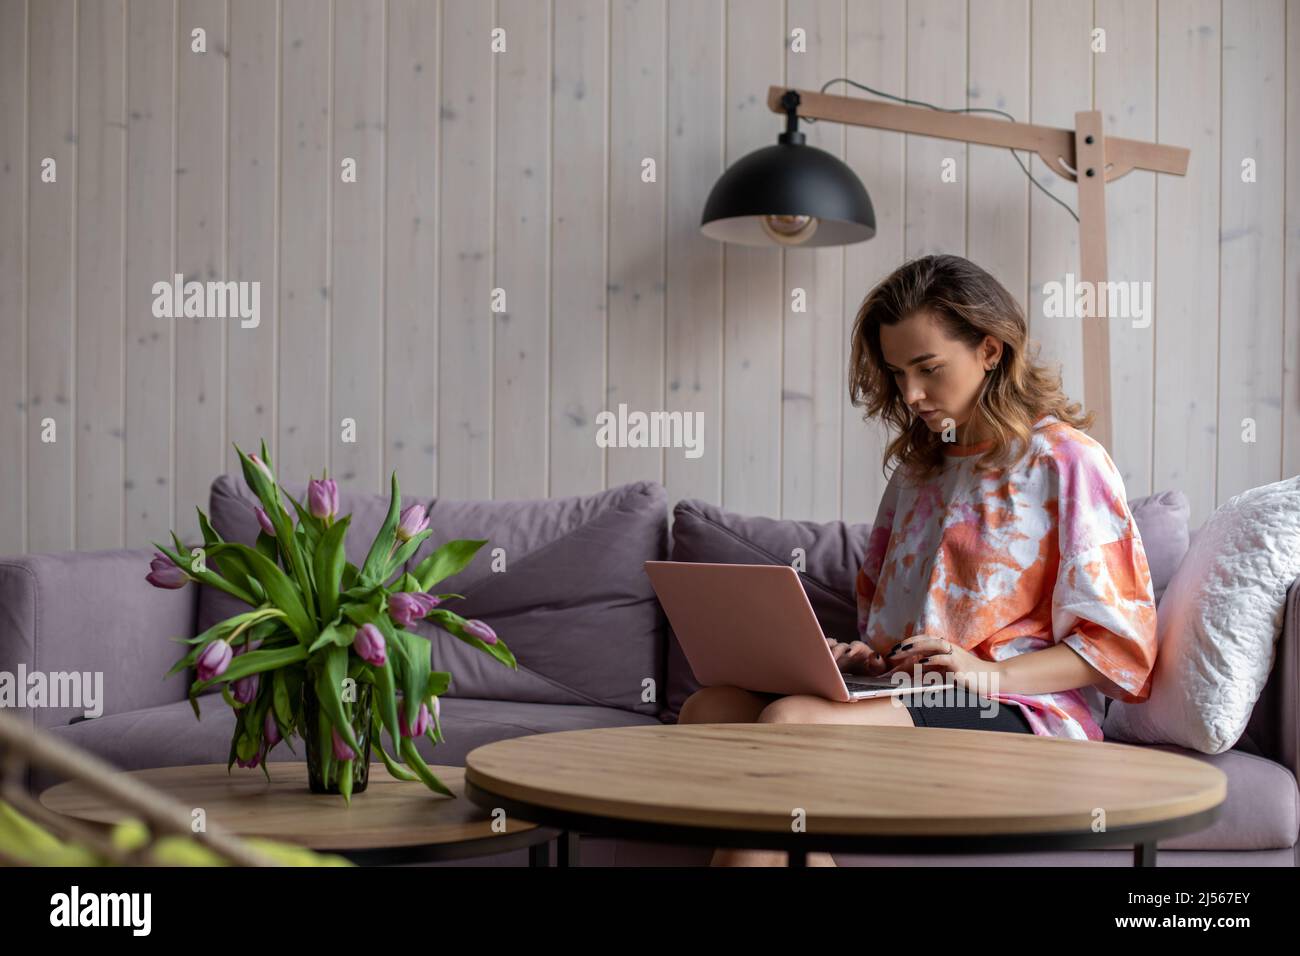 Porträt einer Frau, die auf der Tastatur des Laptops tippt und auf einem weichen Sofa in legerer Kleidung neben dem Tisch sitzt, mit einer Vase mit ausbleichenden Tulpen. Wohnzimmer in Stockfoto